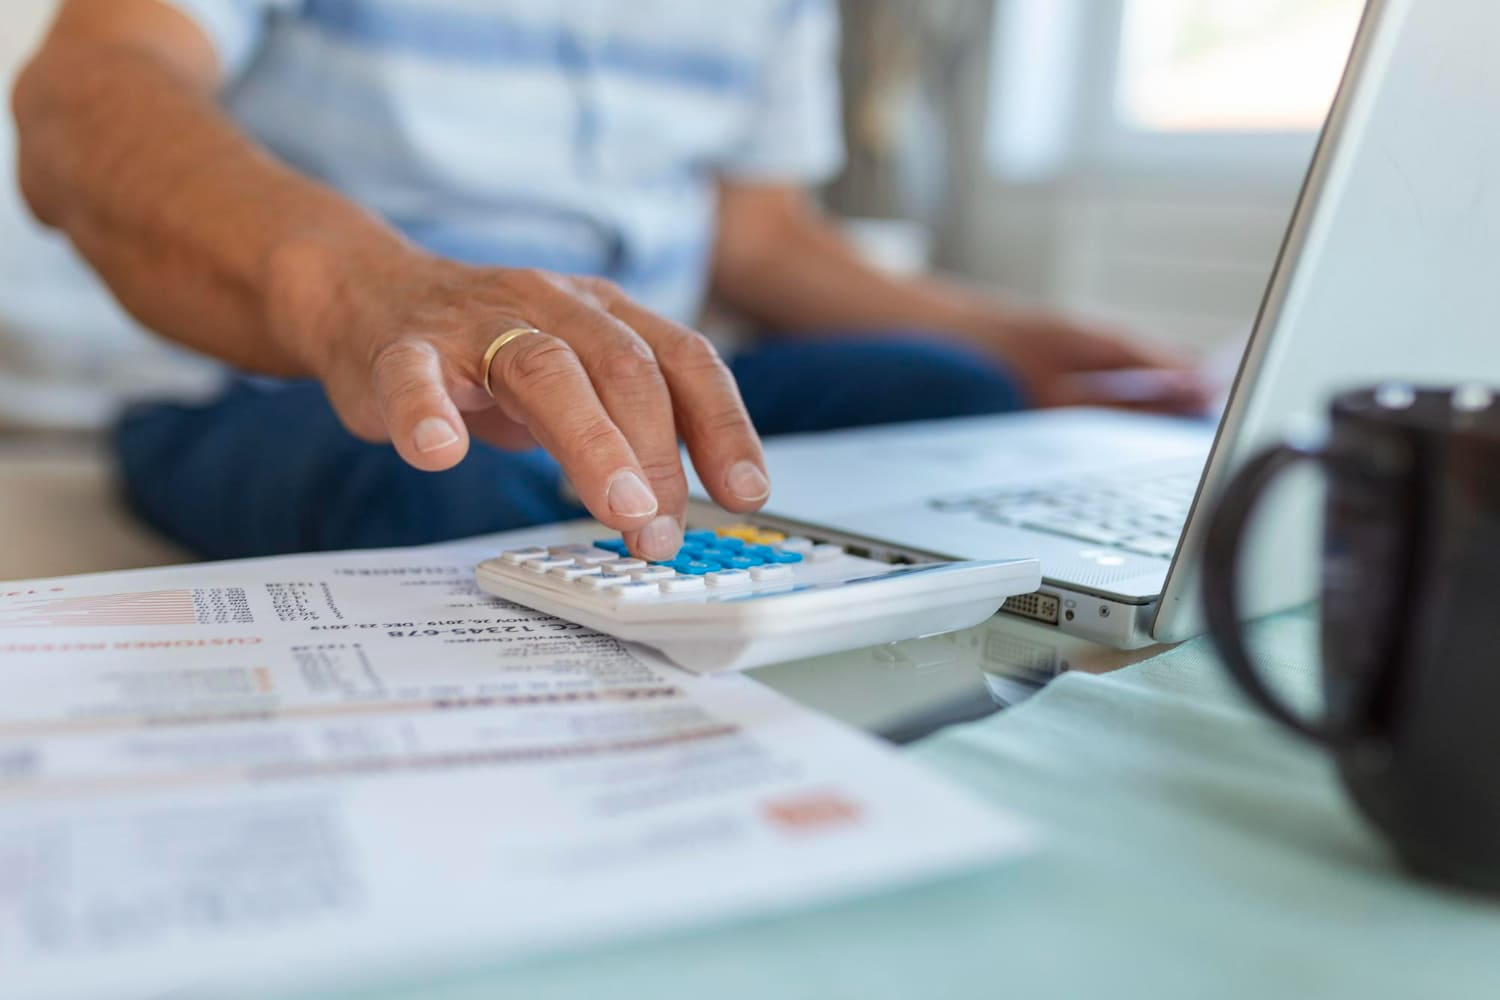 Imagem com pessoa fazendo cálculos na calculadora, notebook e contrato, simbolizando a revisão de dívidas bancárias.